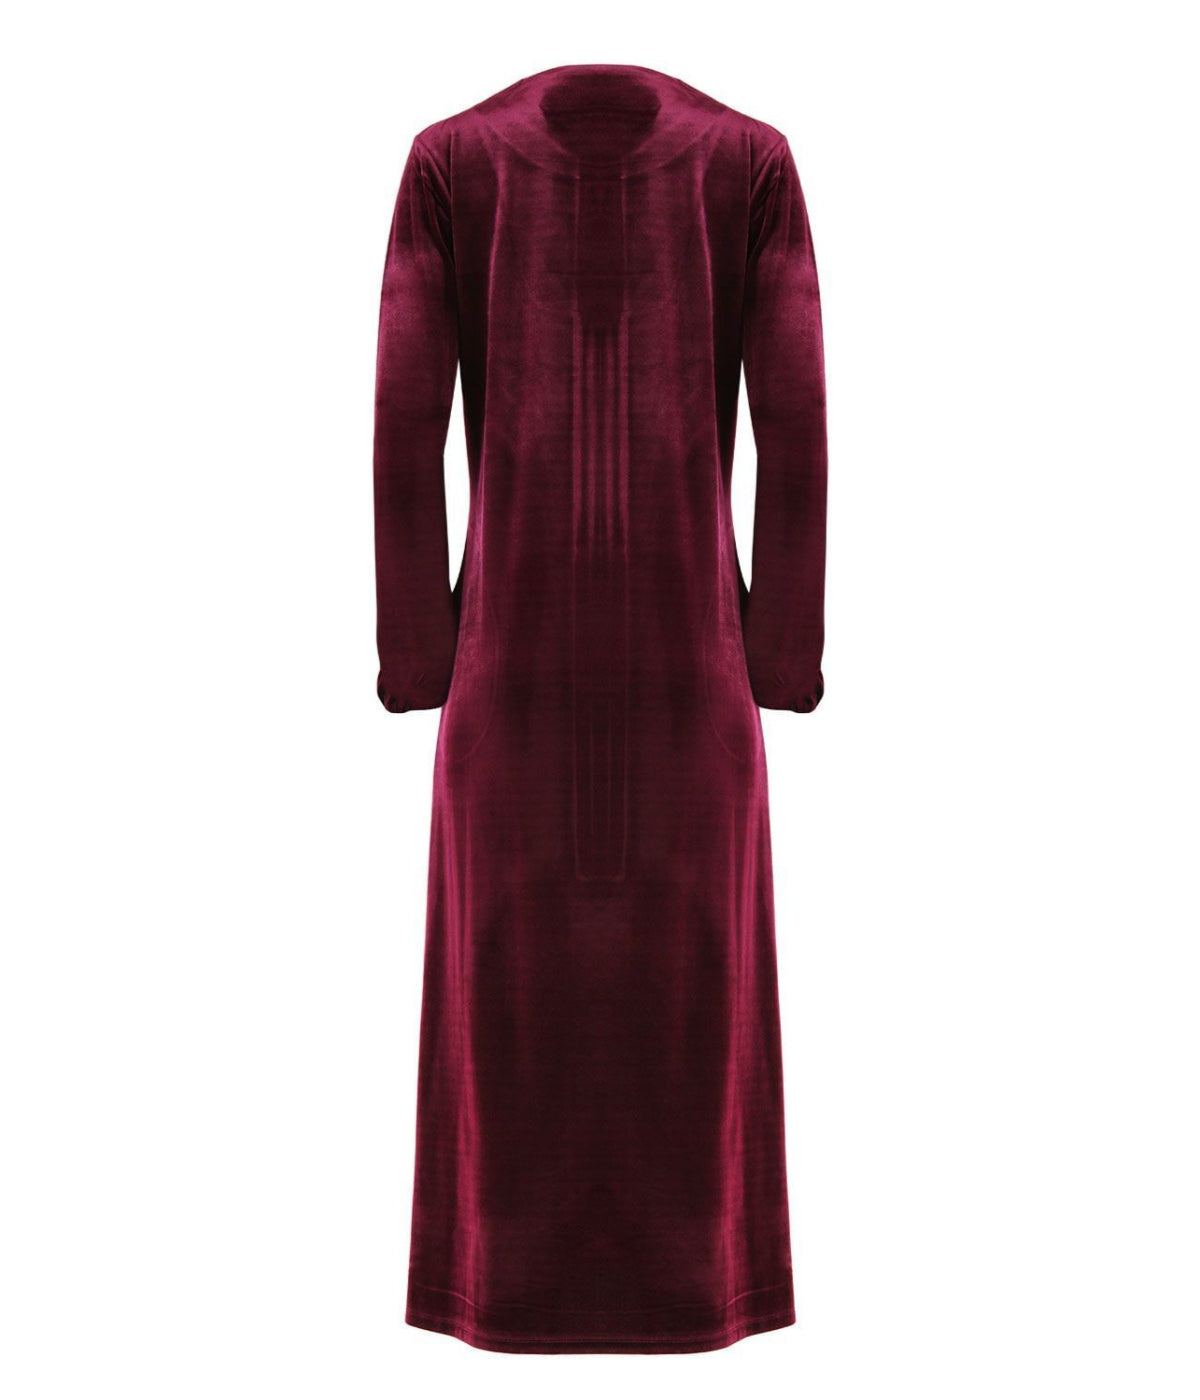 Women's Velour Zippered Front Full Length Lounger Gown Burgundy